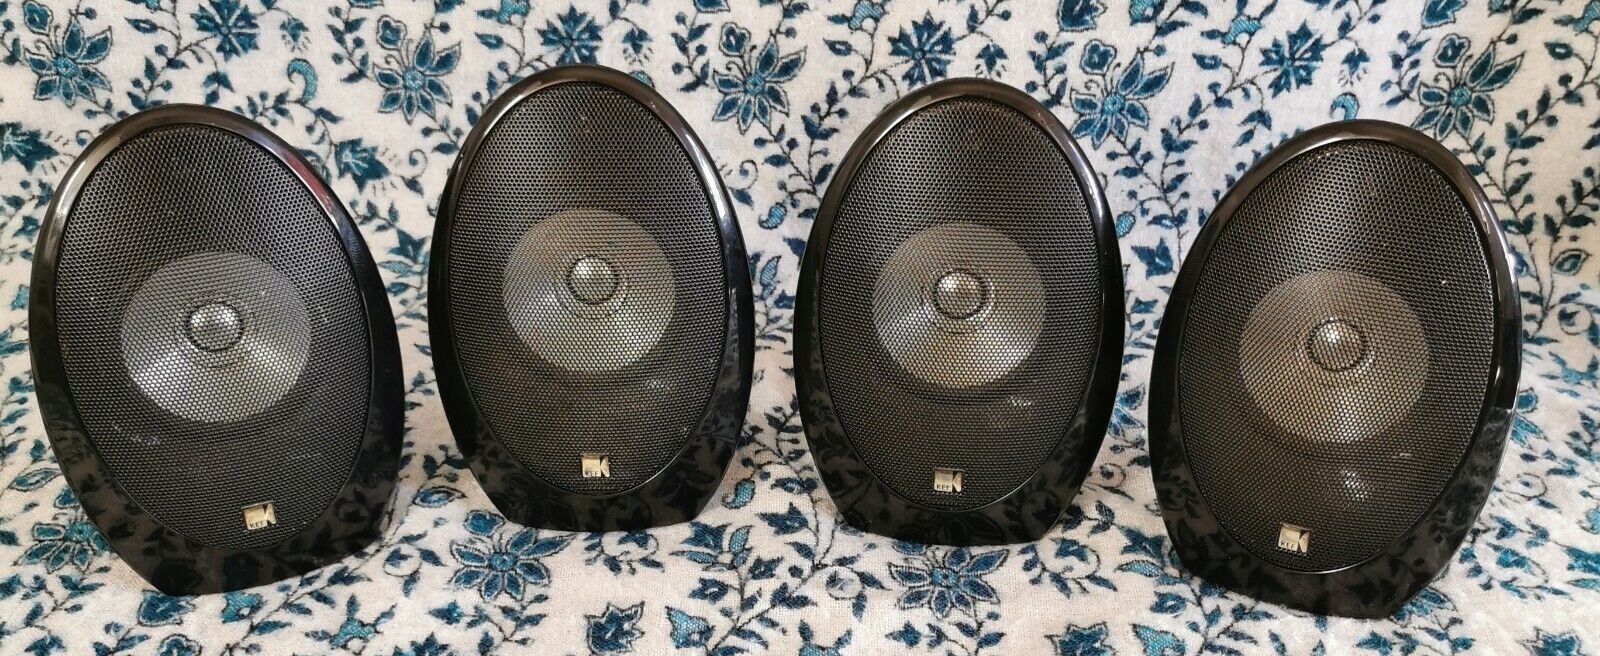 KEF Egg Black SPEAKERS 4 speakers in total. Great powerful SPEAKERS FULLY TESTED Gloednieuw